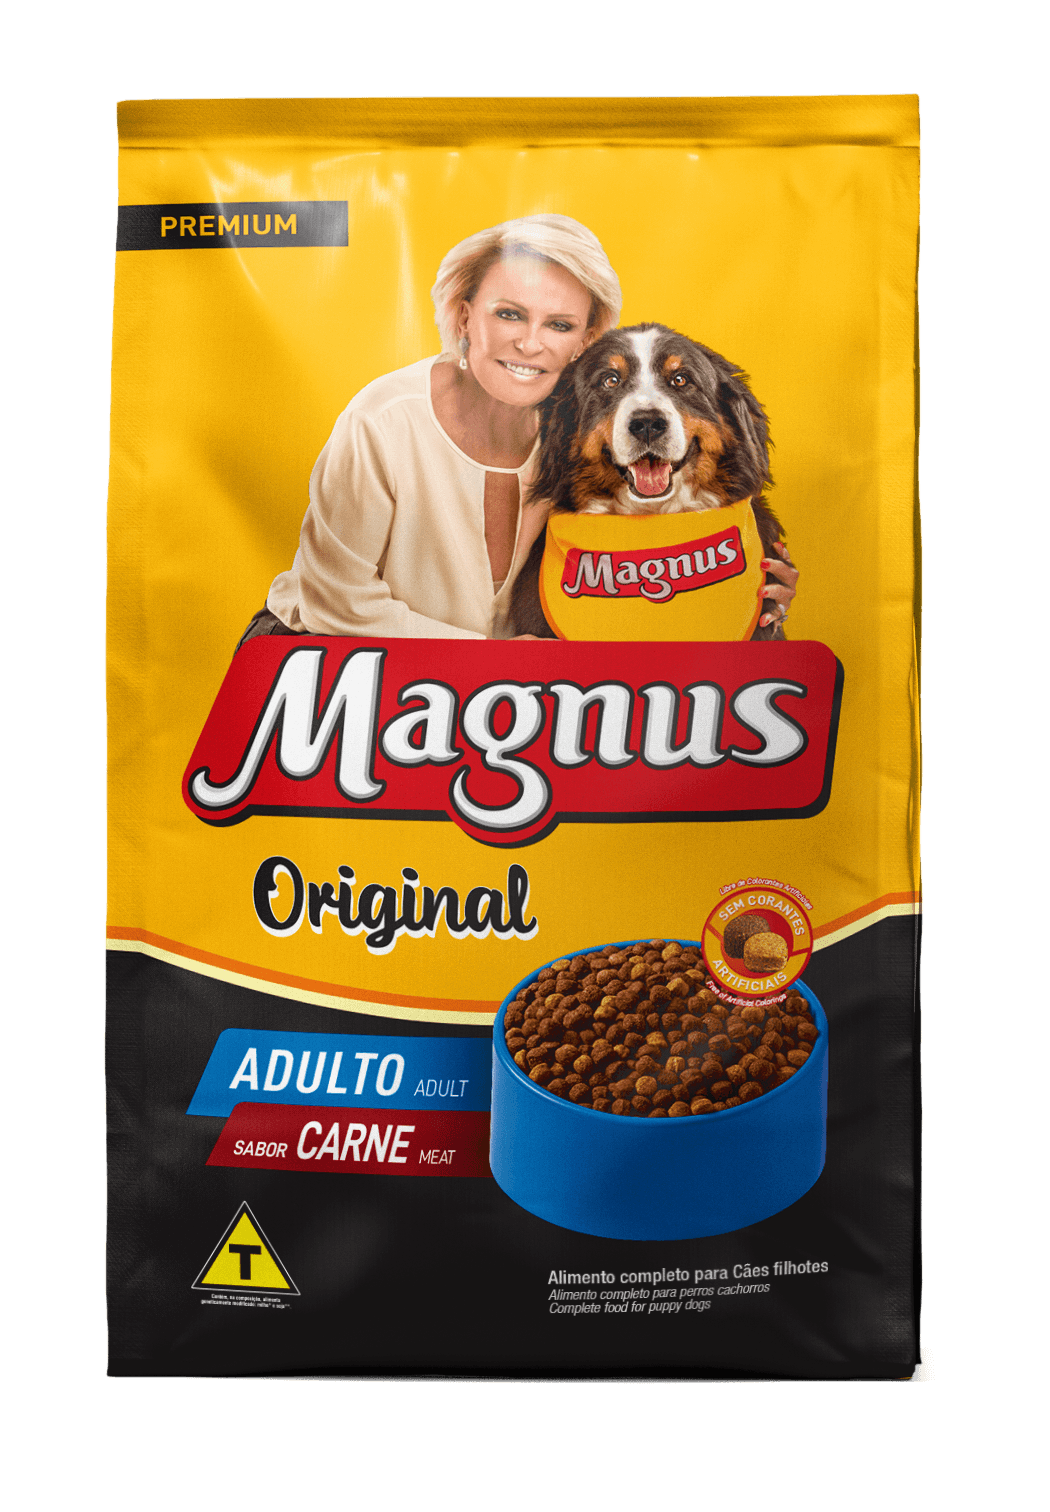 Magnus Premium Original Adult Dogs Beef Flavor